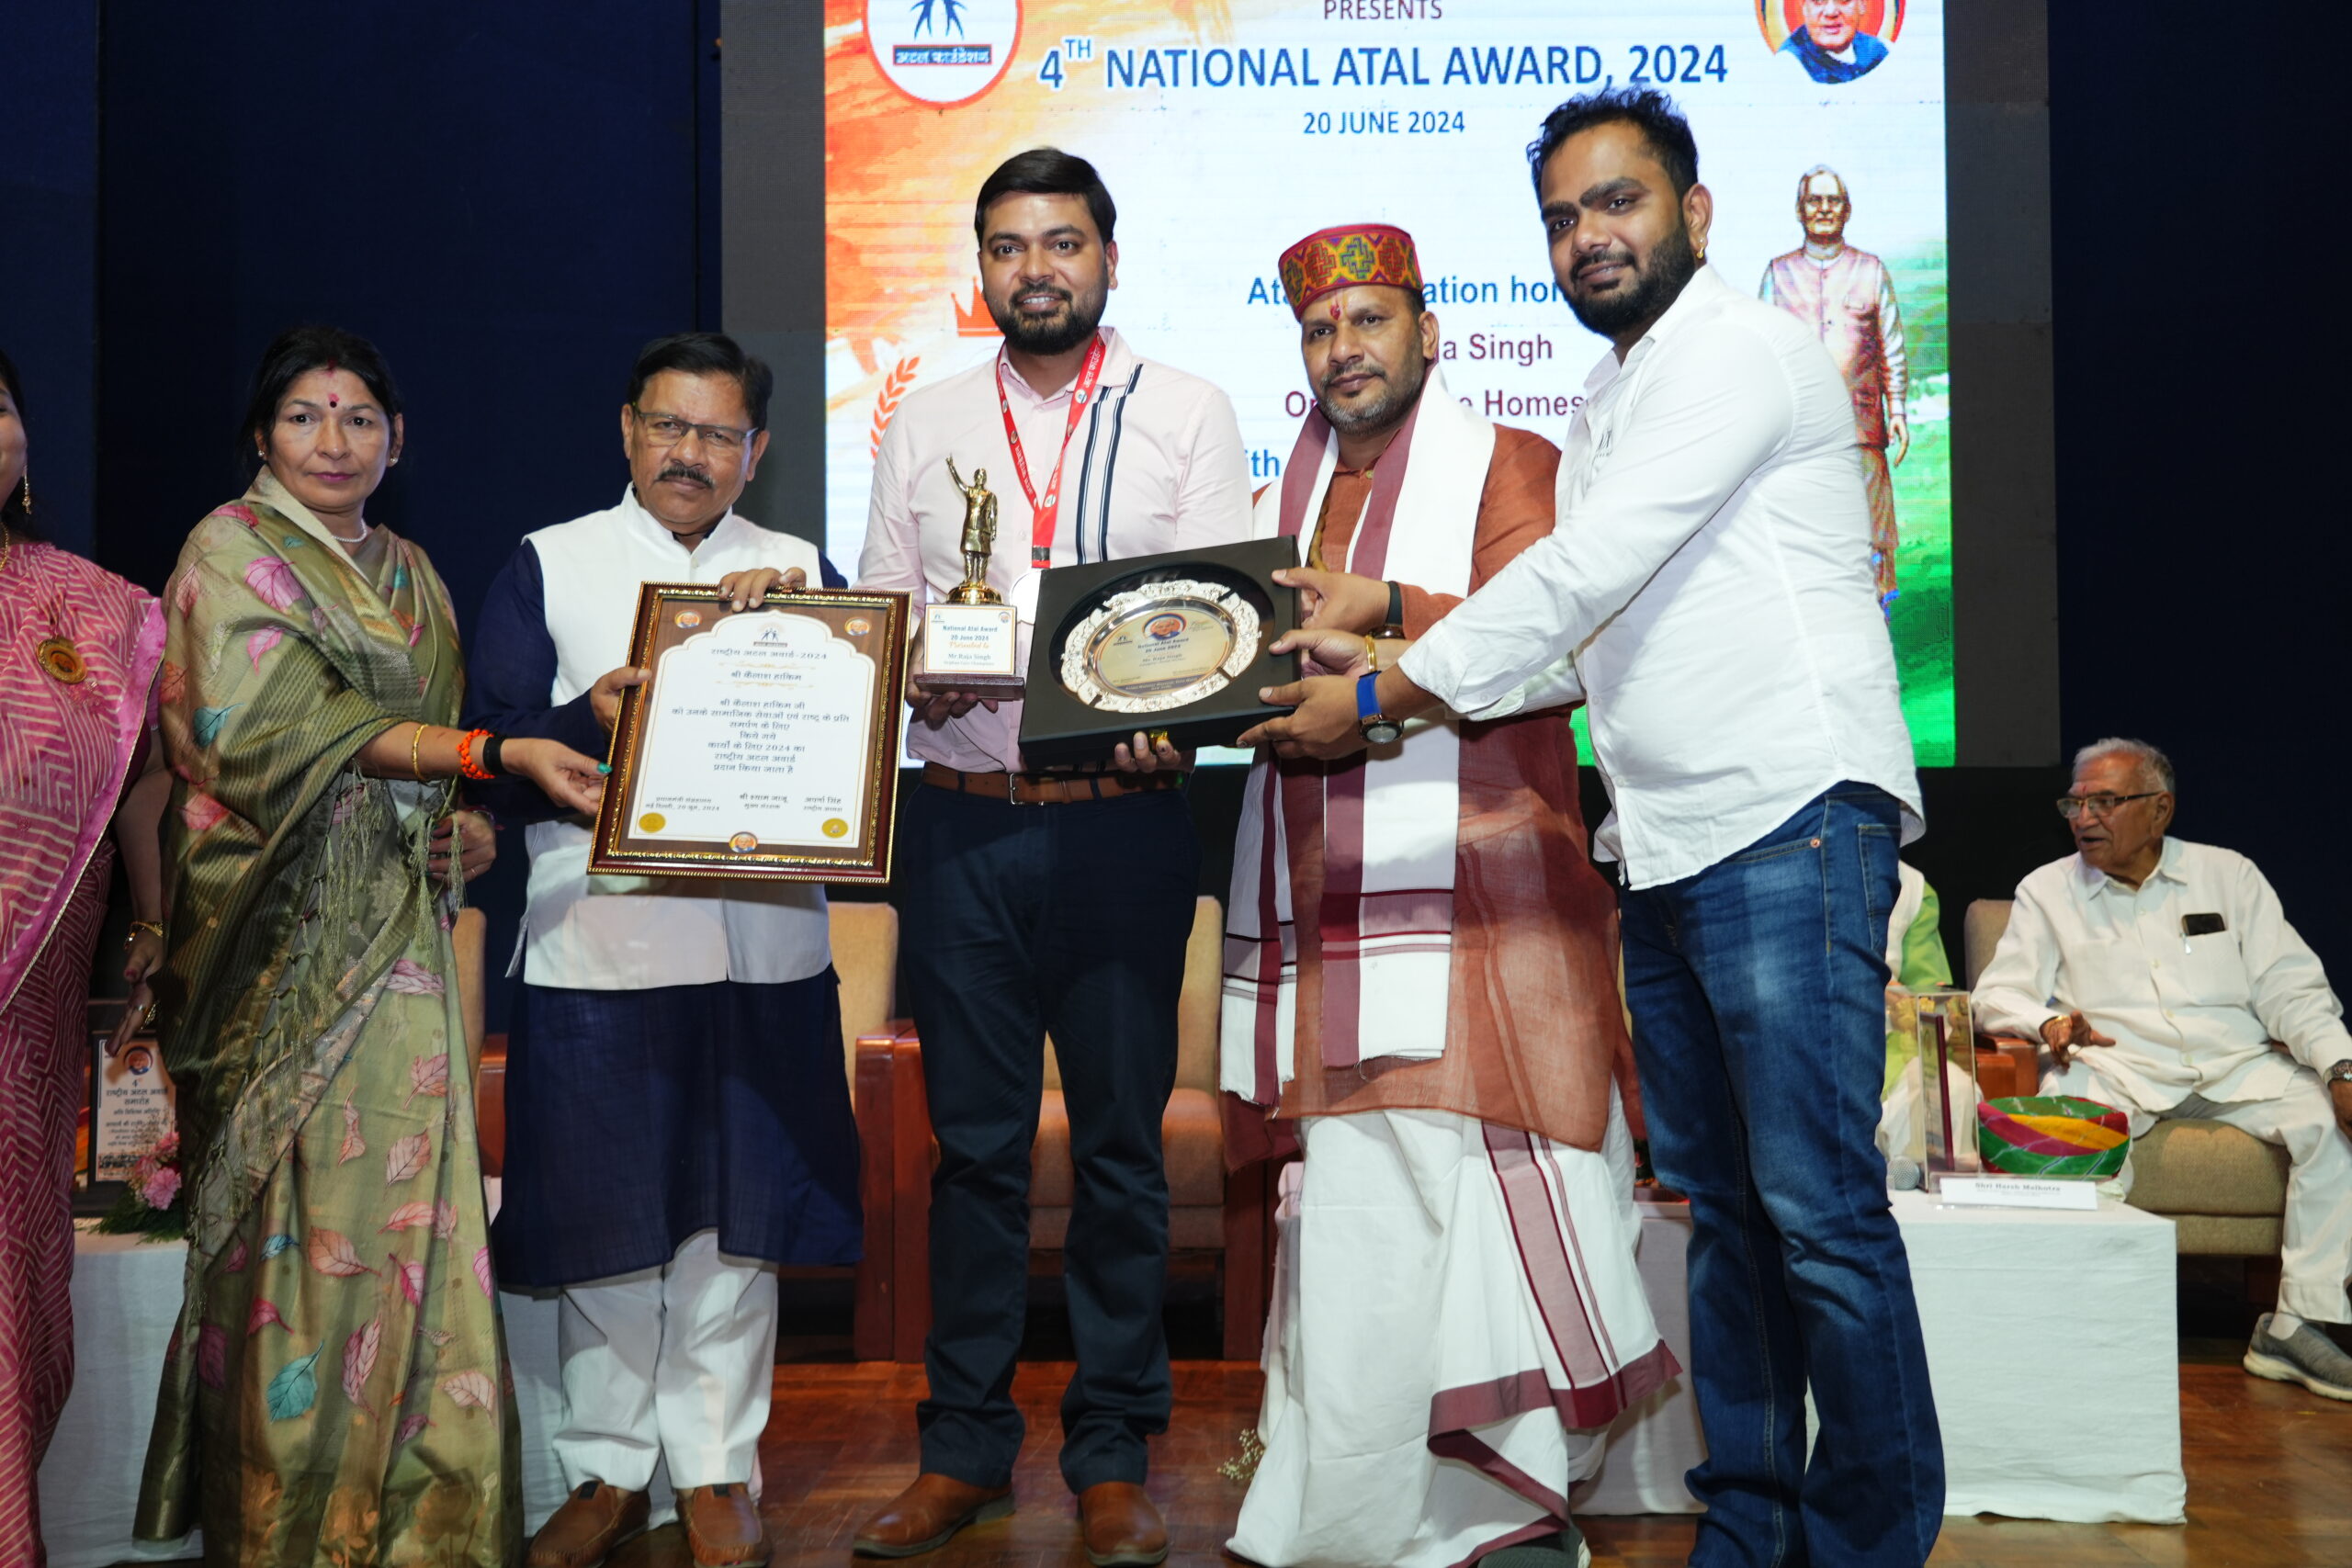 Famous food entrepreneur Shri Raja honored at Atal National Award Ceremony in Delhi